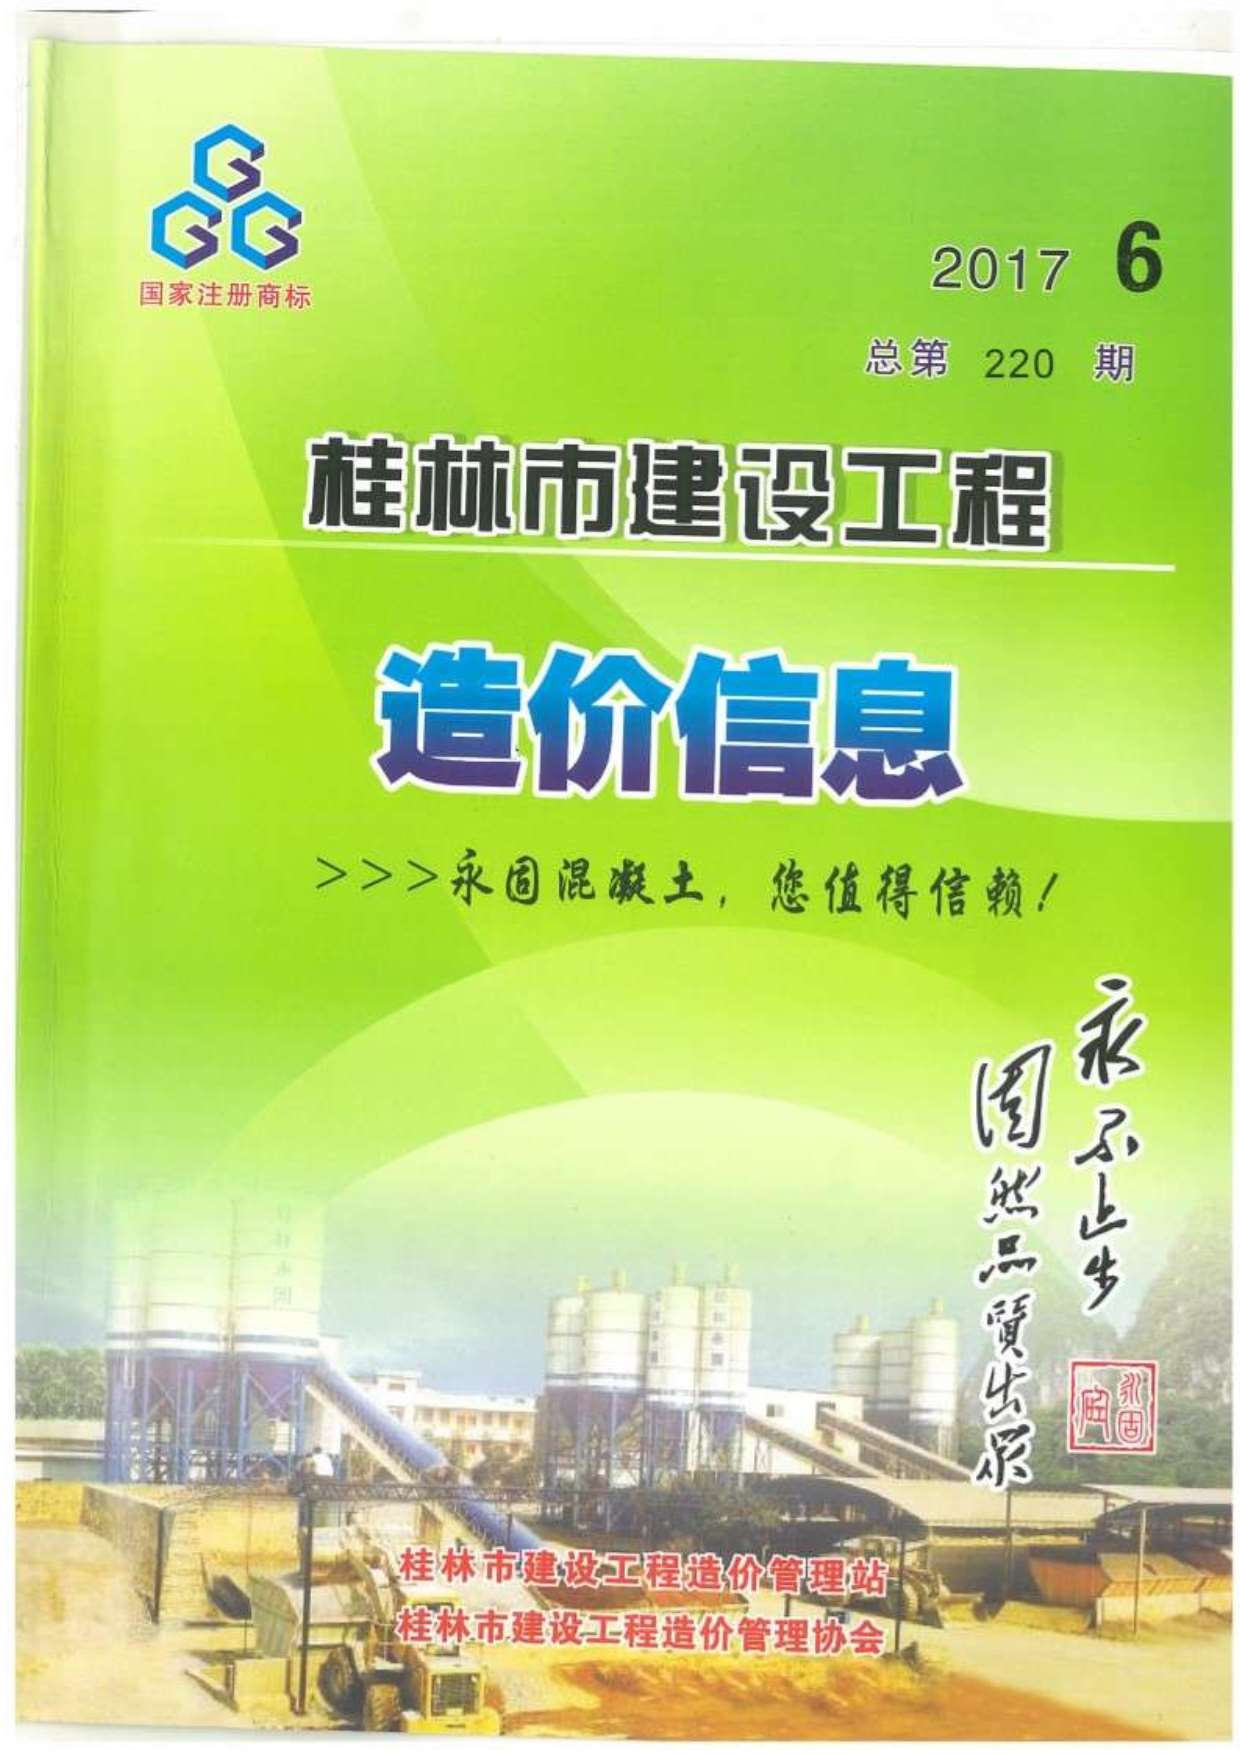 桂林市2017年6月建设工程造价信息造价库信息价